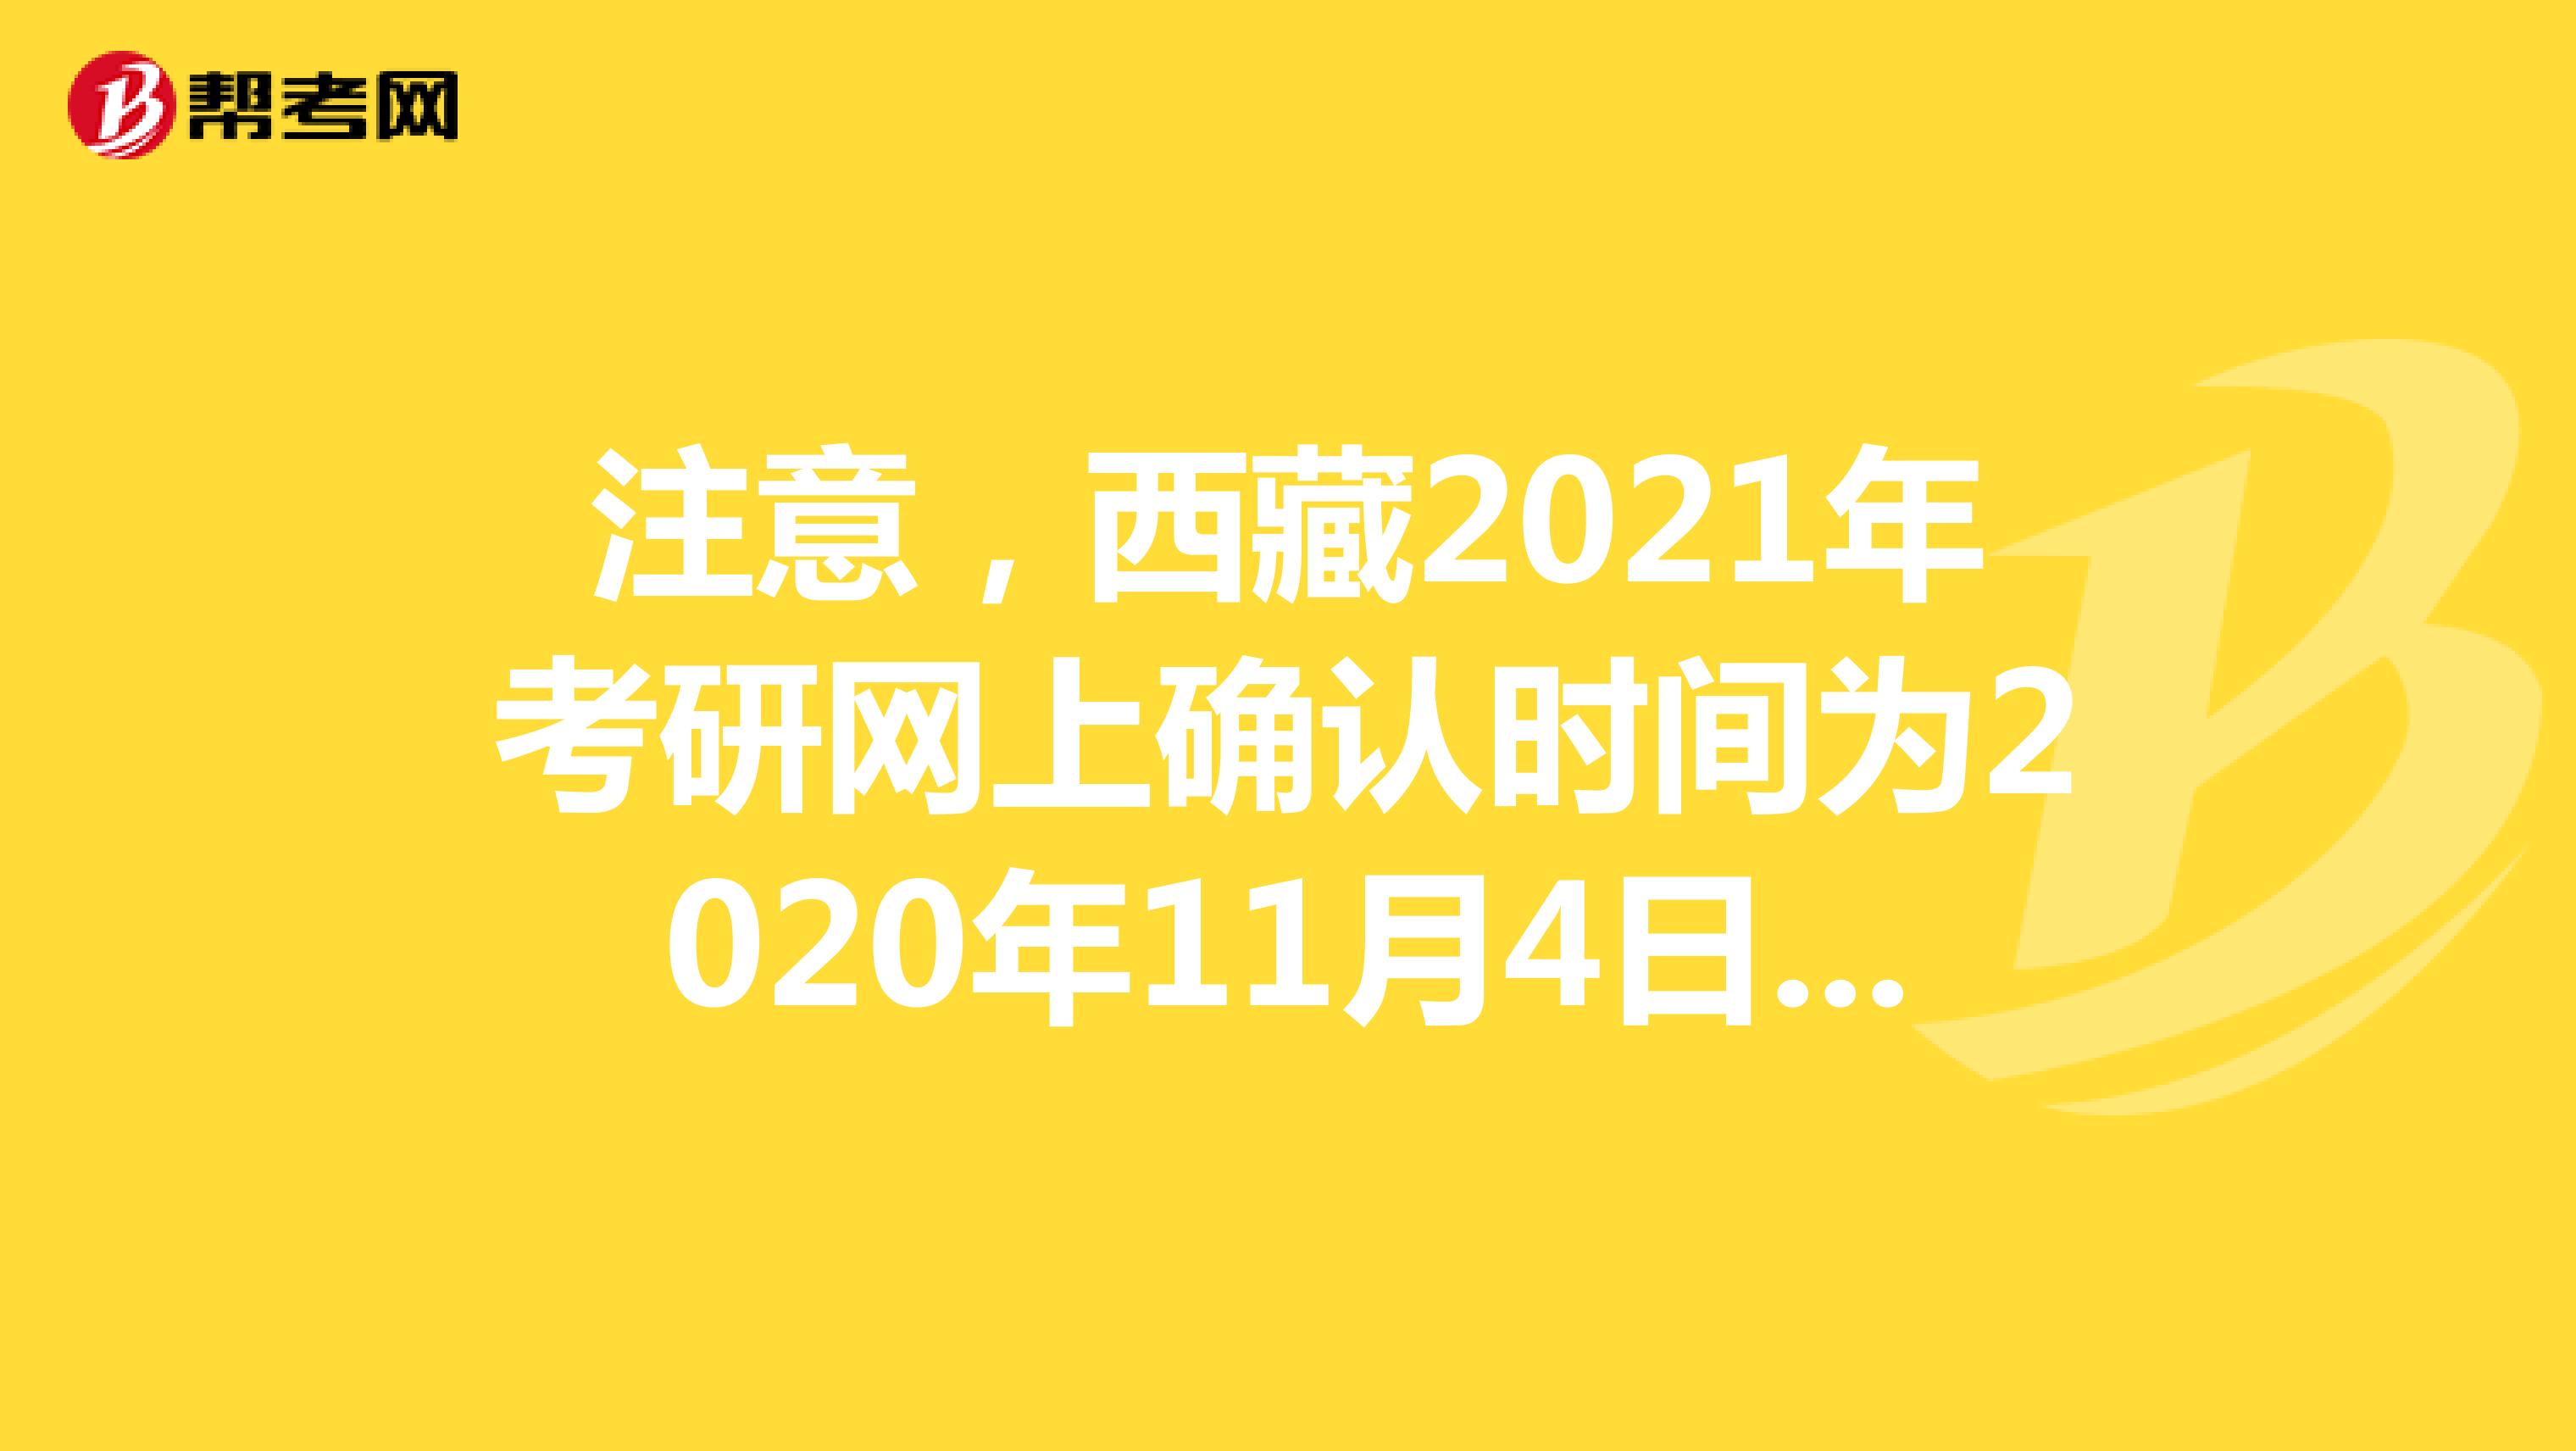 注意，西藏2021年考研网上确认时间为2020年11月4日-8日